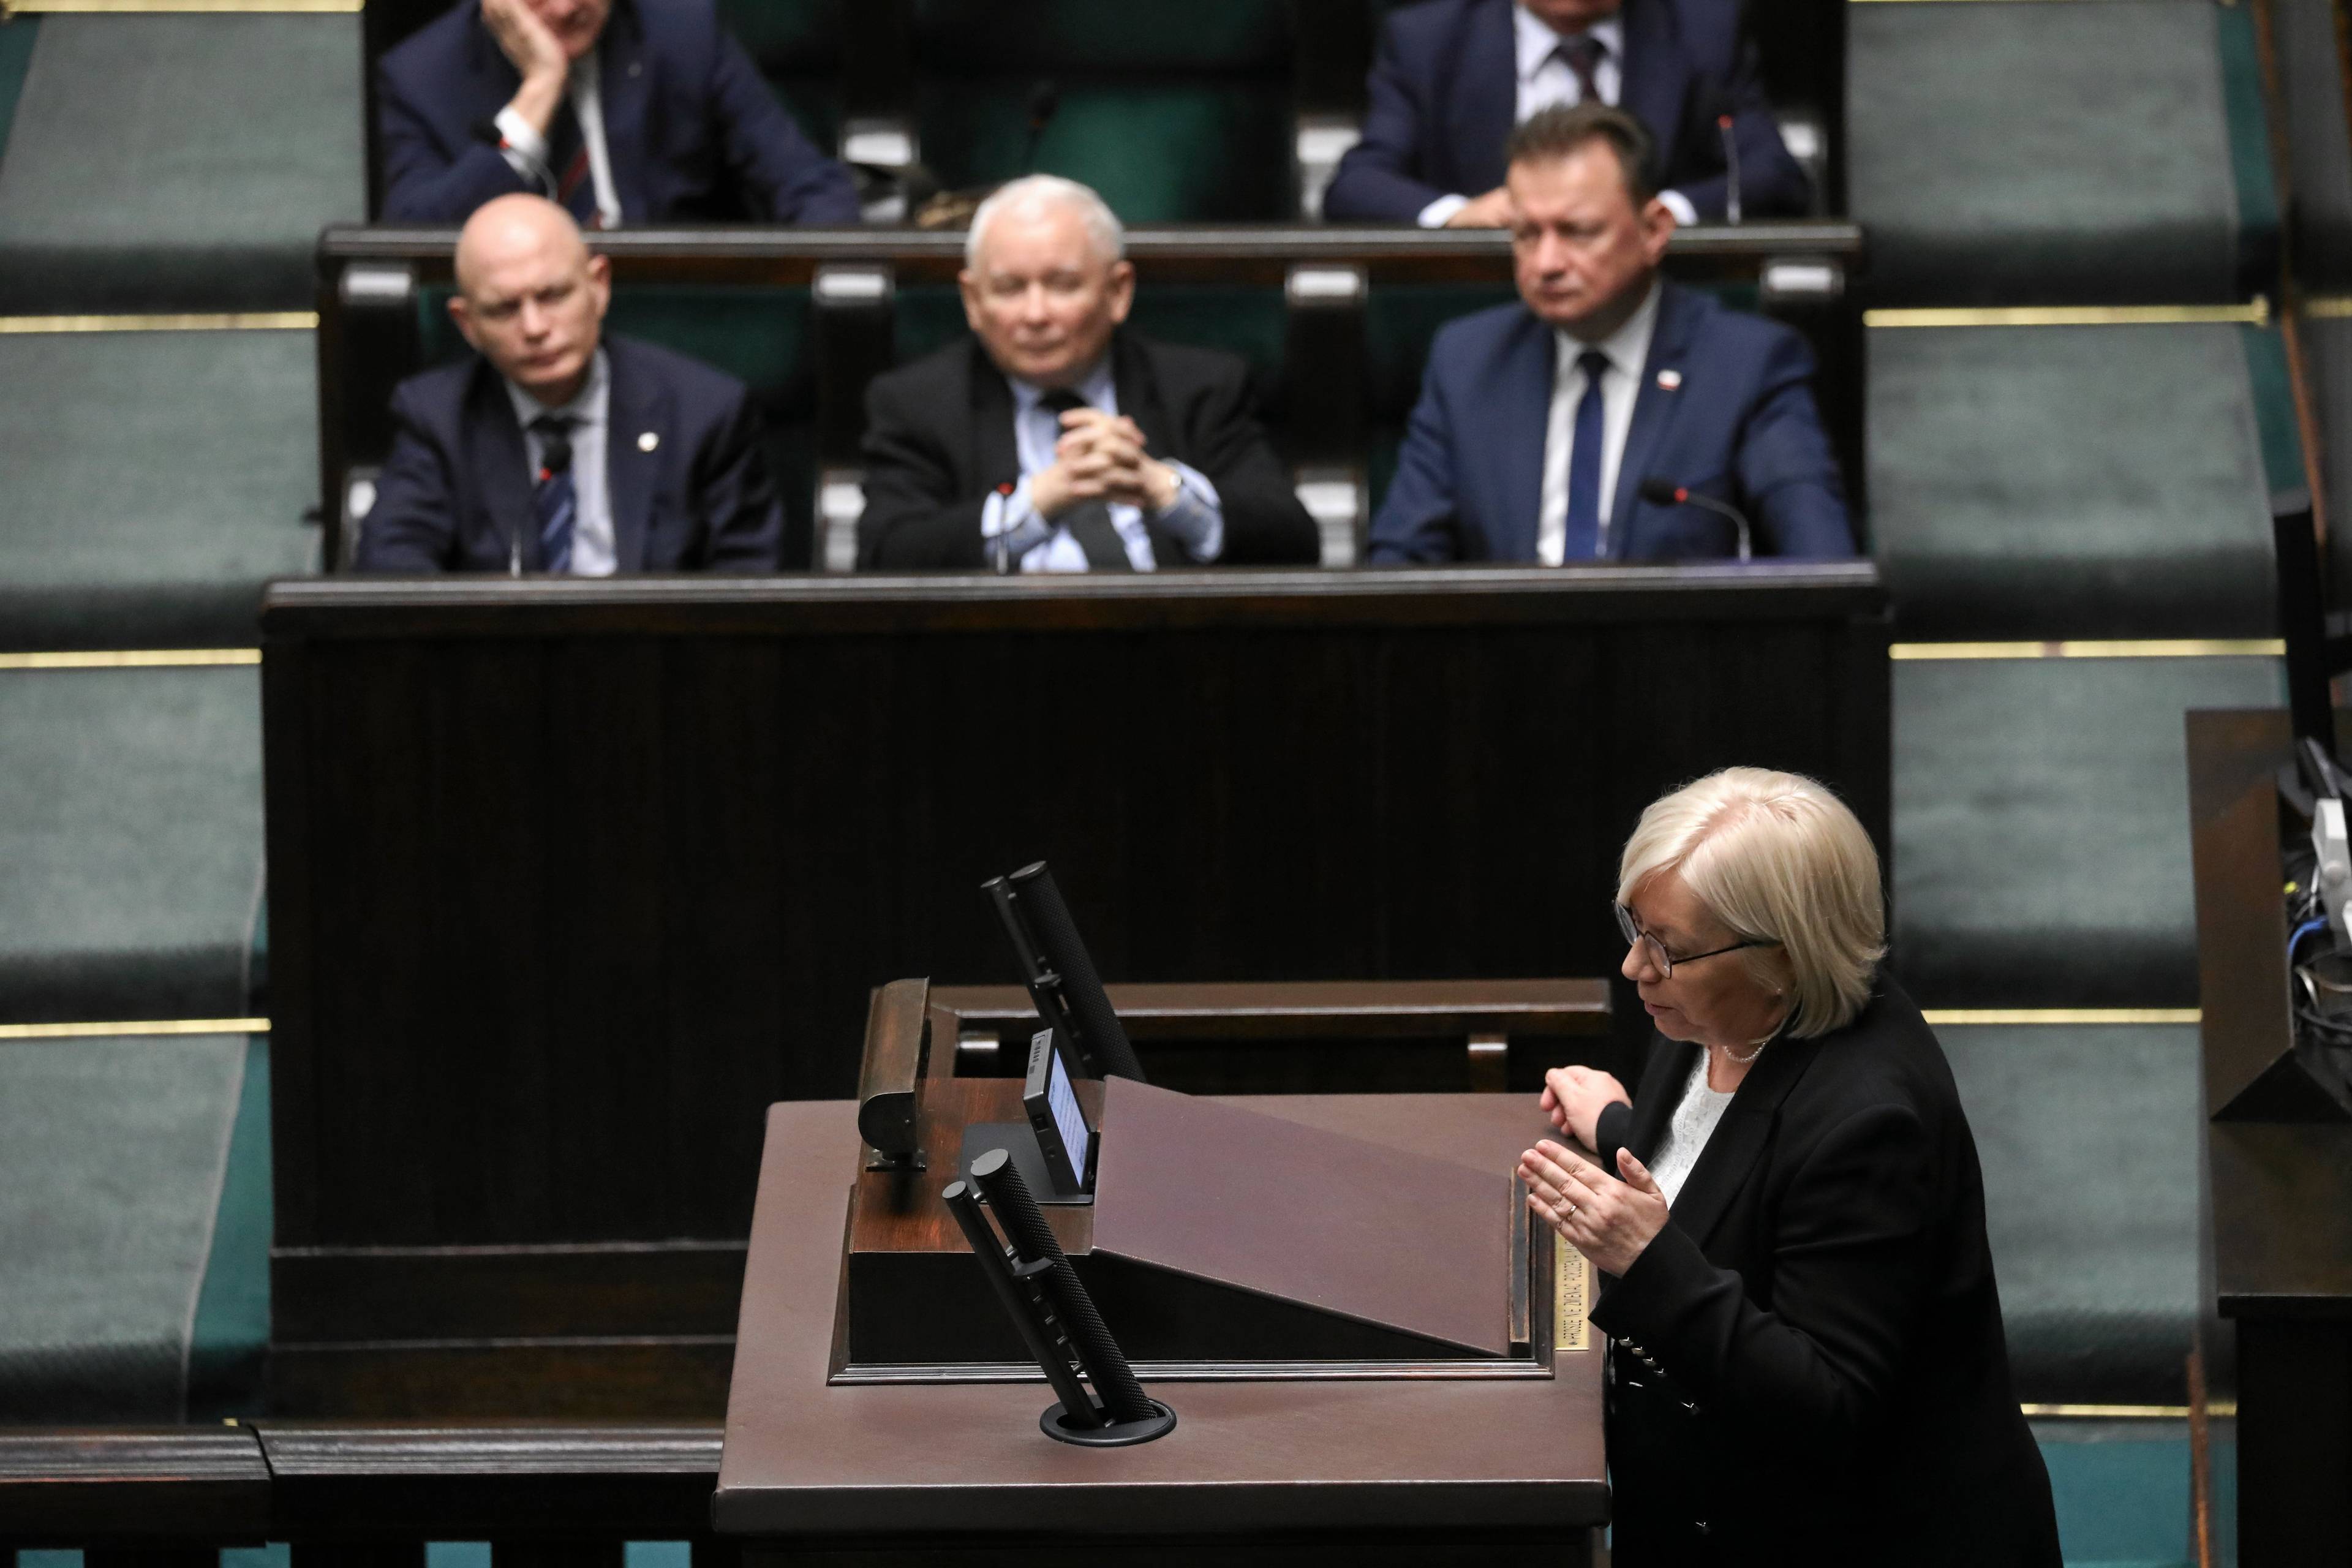 Na zdjęciu widzimy Julię Przyłębską, prezes TK, która przemawia w Sejmie. W tle w ławach siedzą Jarosław Kaczyński, Mariusz Błaszczak i Waldemar Andzel.